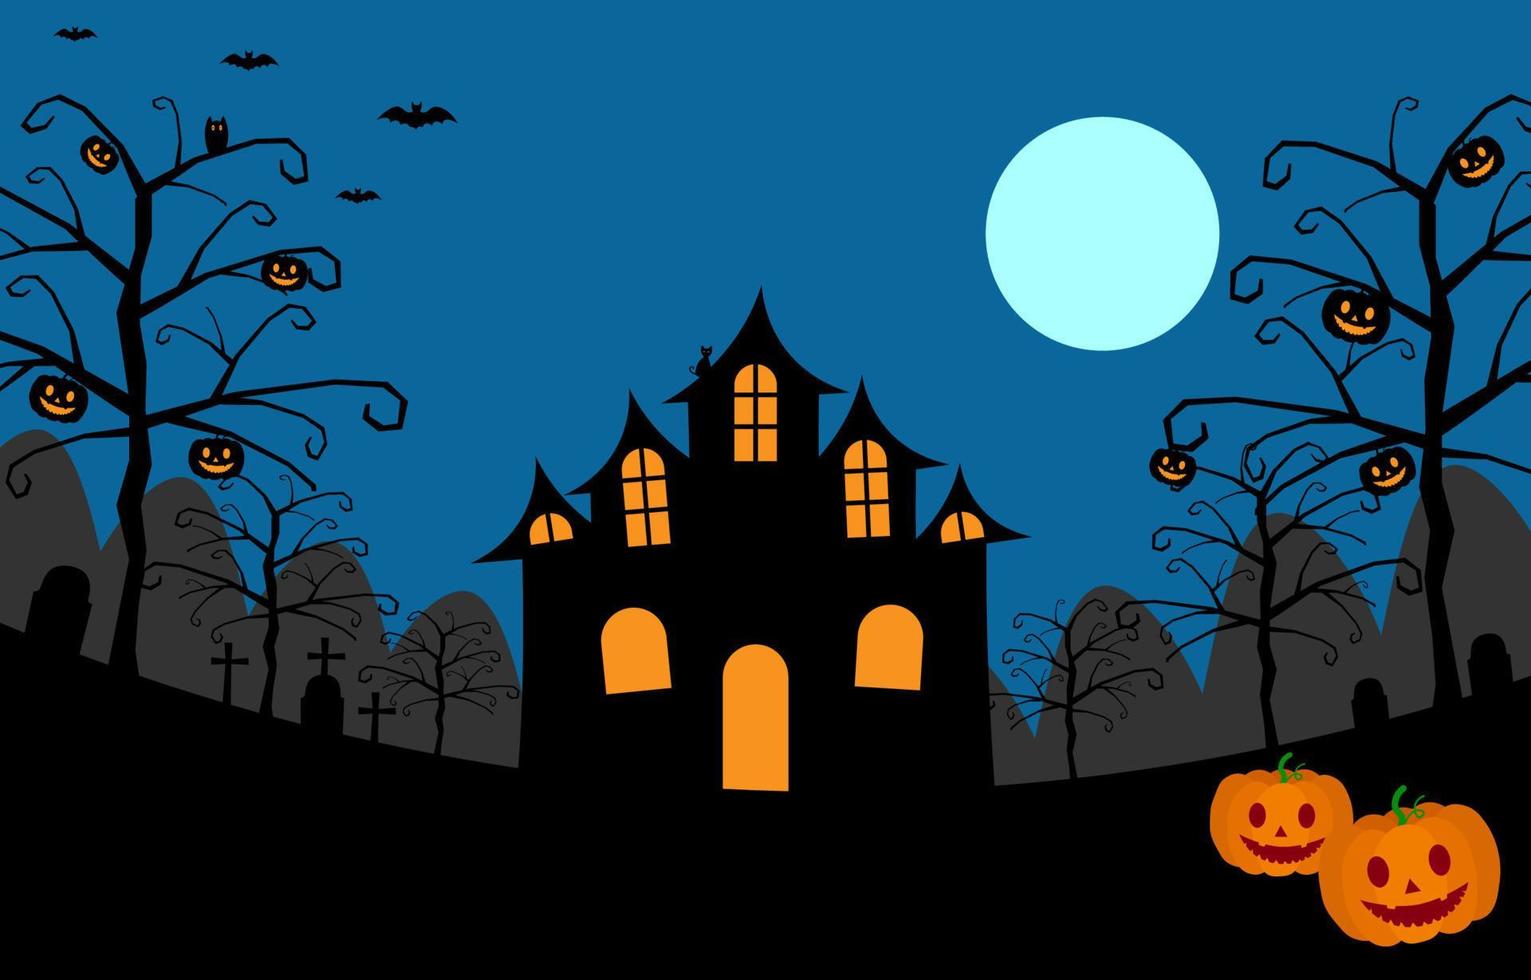 fond de nuit d'halloween avec des citrouilles effrayantes, un château sombre, des pierres tombales, des croix, des arbres fantasmagoriques, un hibou, un chat noir, une chauve-souris volante et la pleine lune sur fond bleu. illustration vectorielle concept de jour d'halloween. vecteur